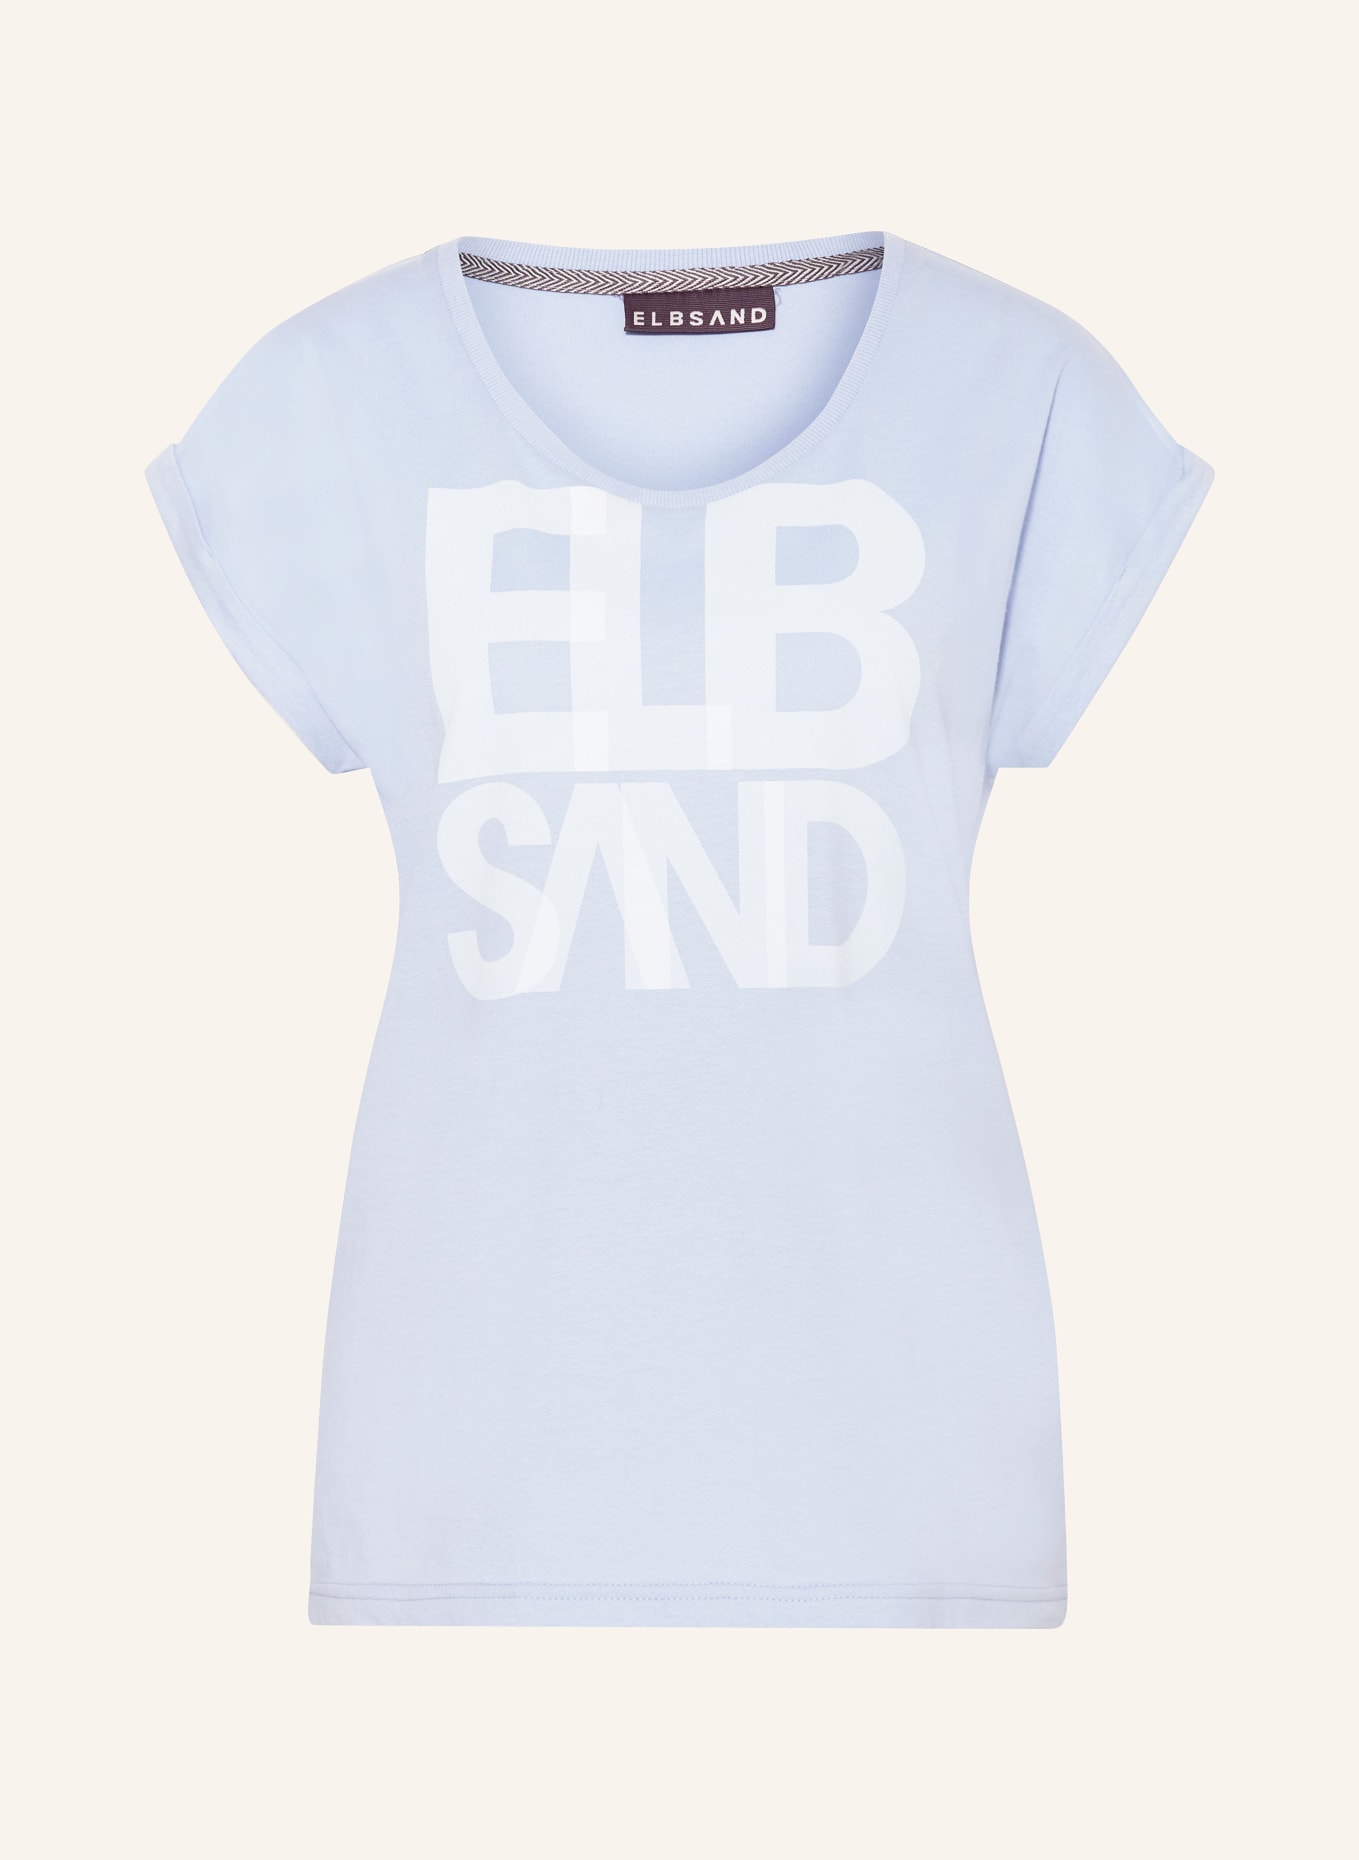 ELBSAND T-Shirt ELDIS, Farbe: HELLBLAU (Bild 1)